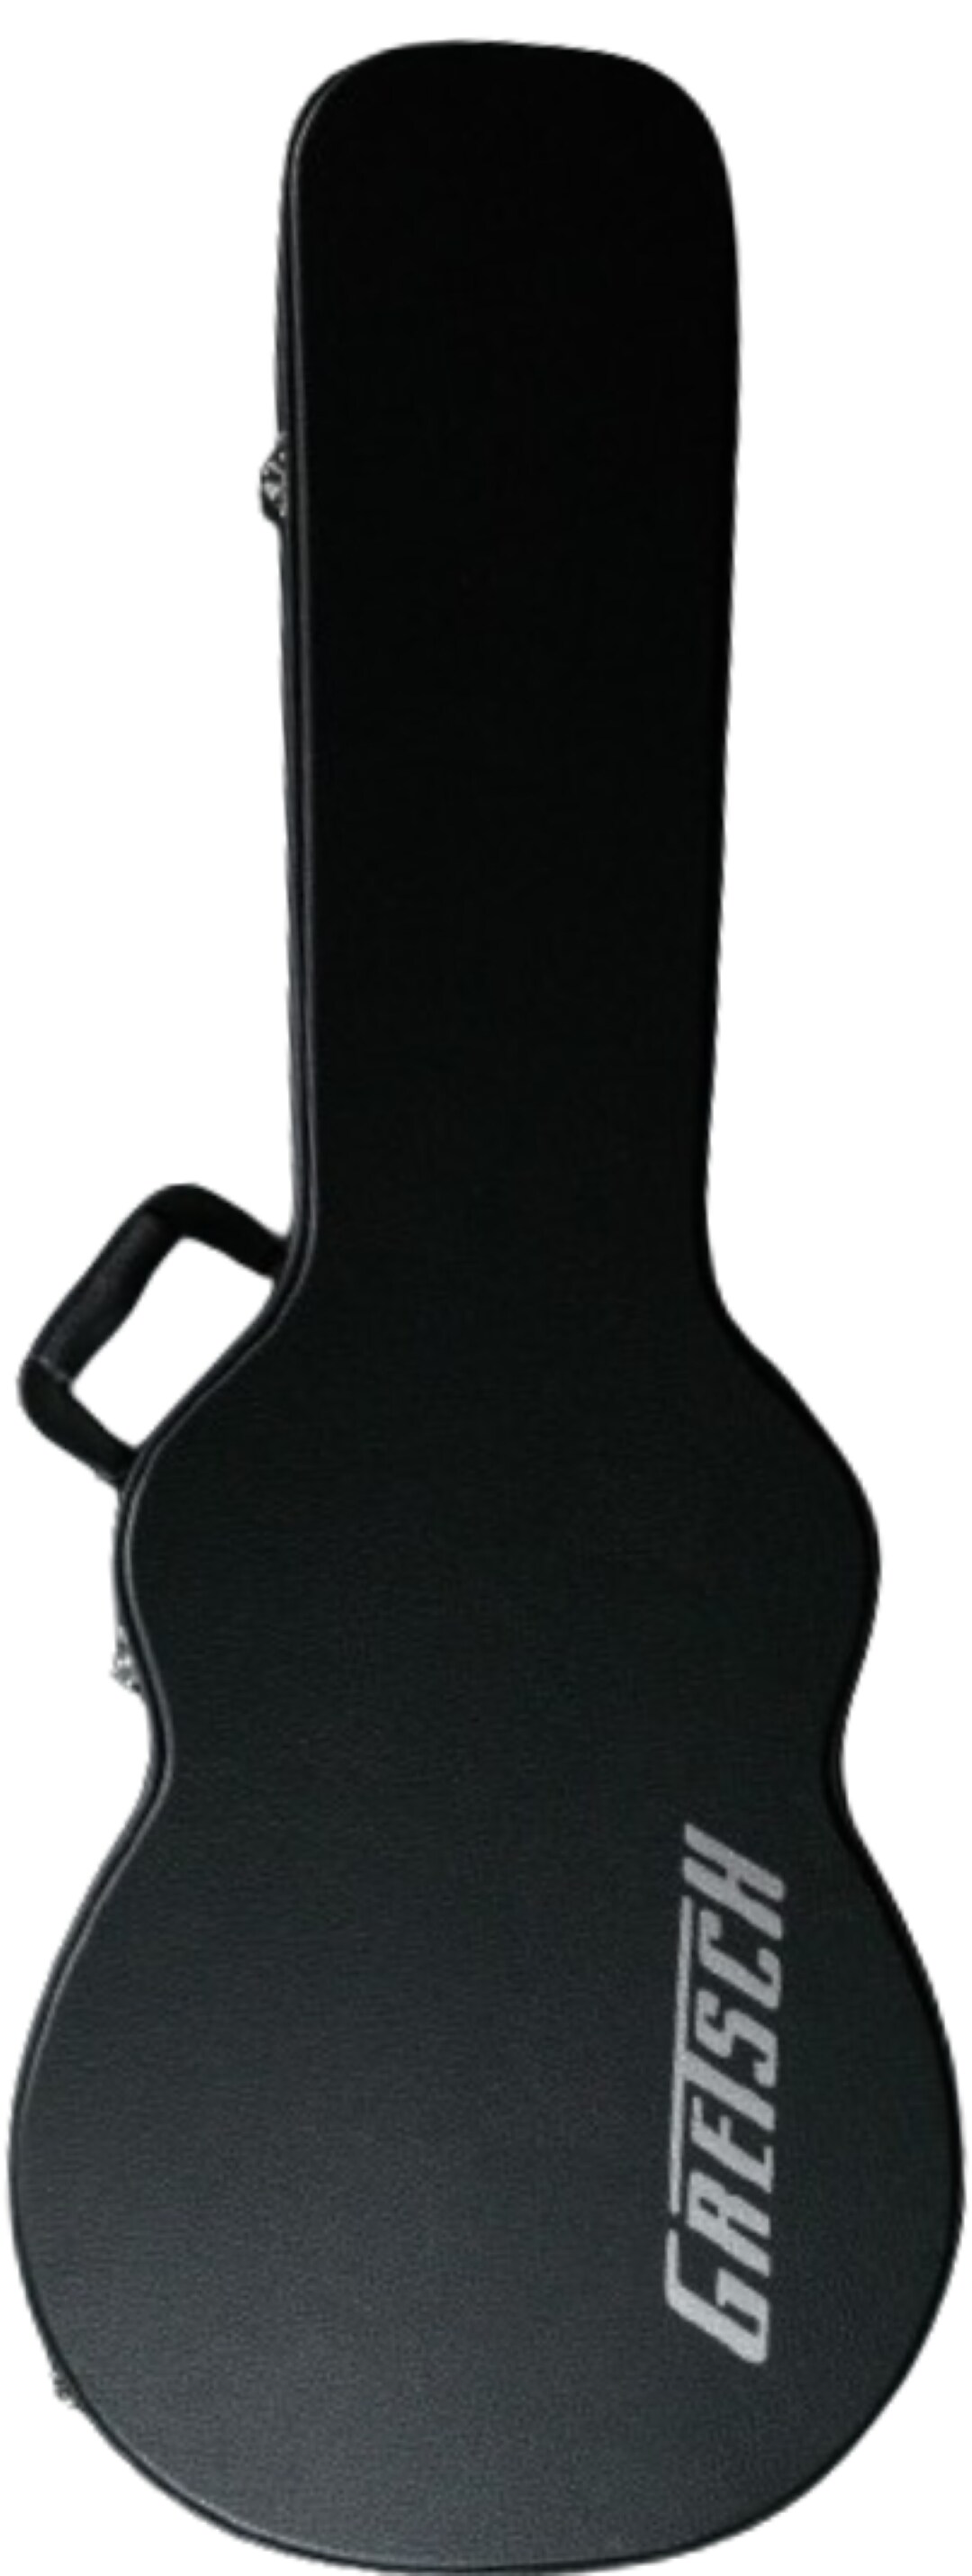 Gretsch Streamliner Center Block Junior Hard Shell Guitar Case (For G2655 &  G2655T) - Black